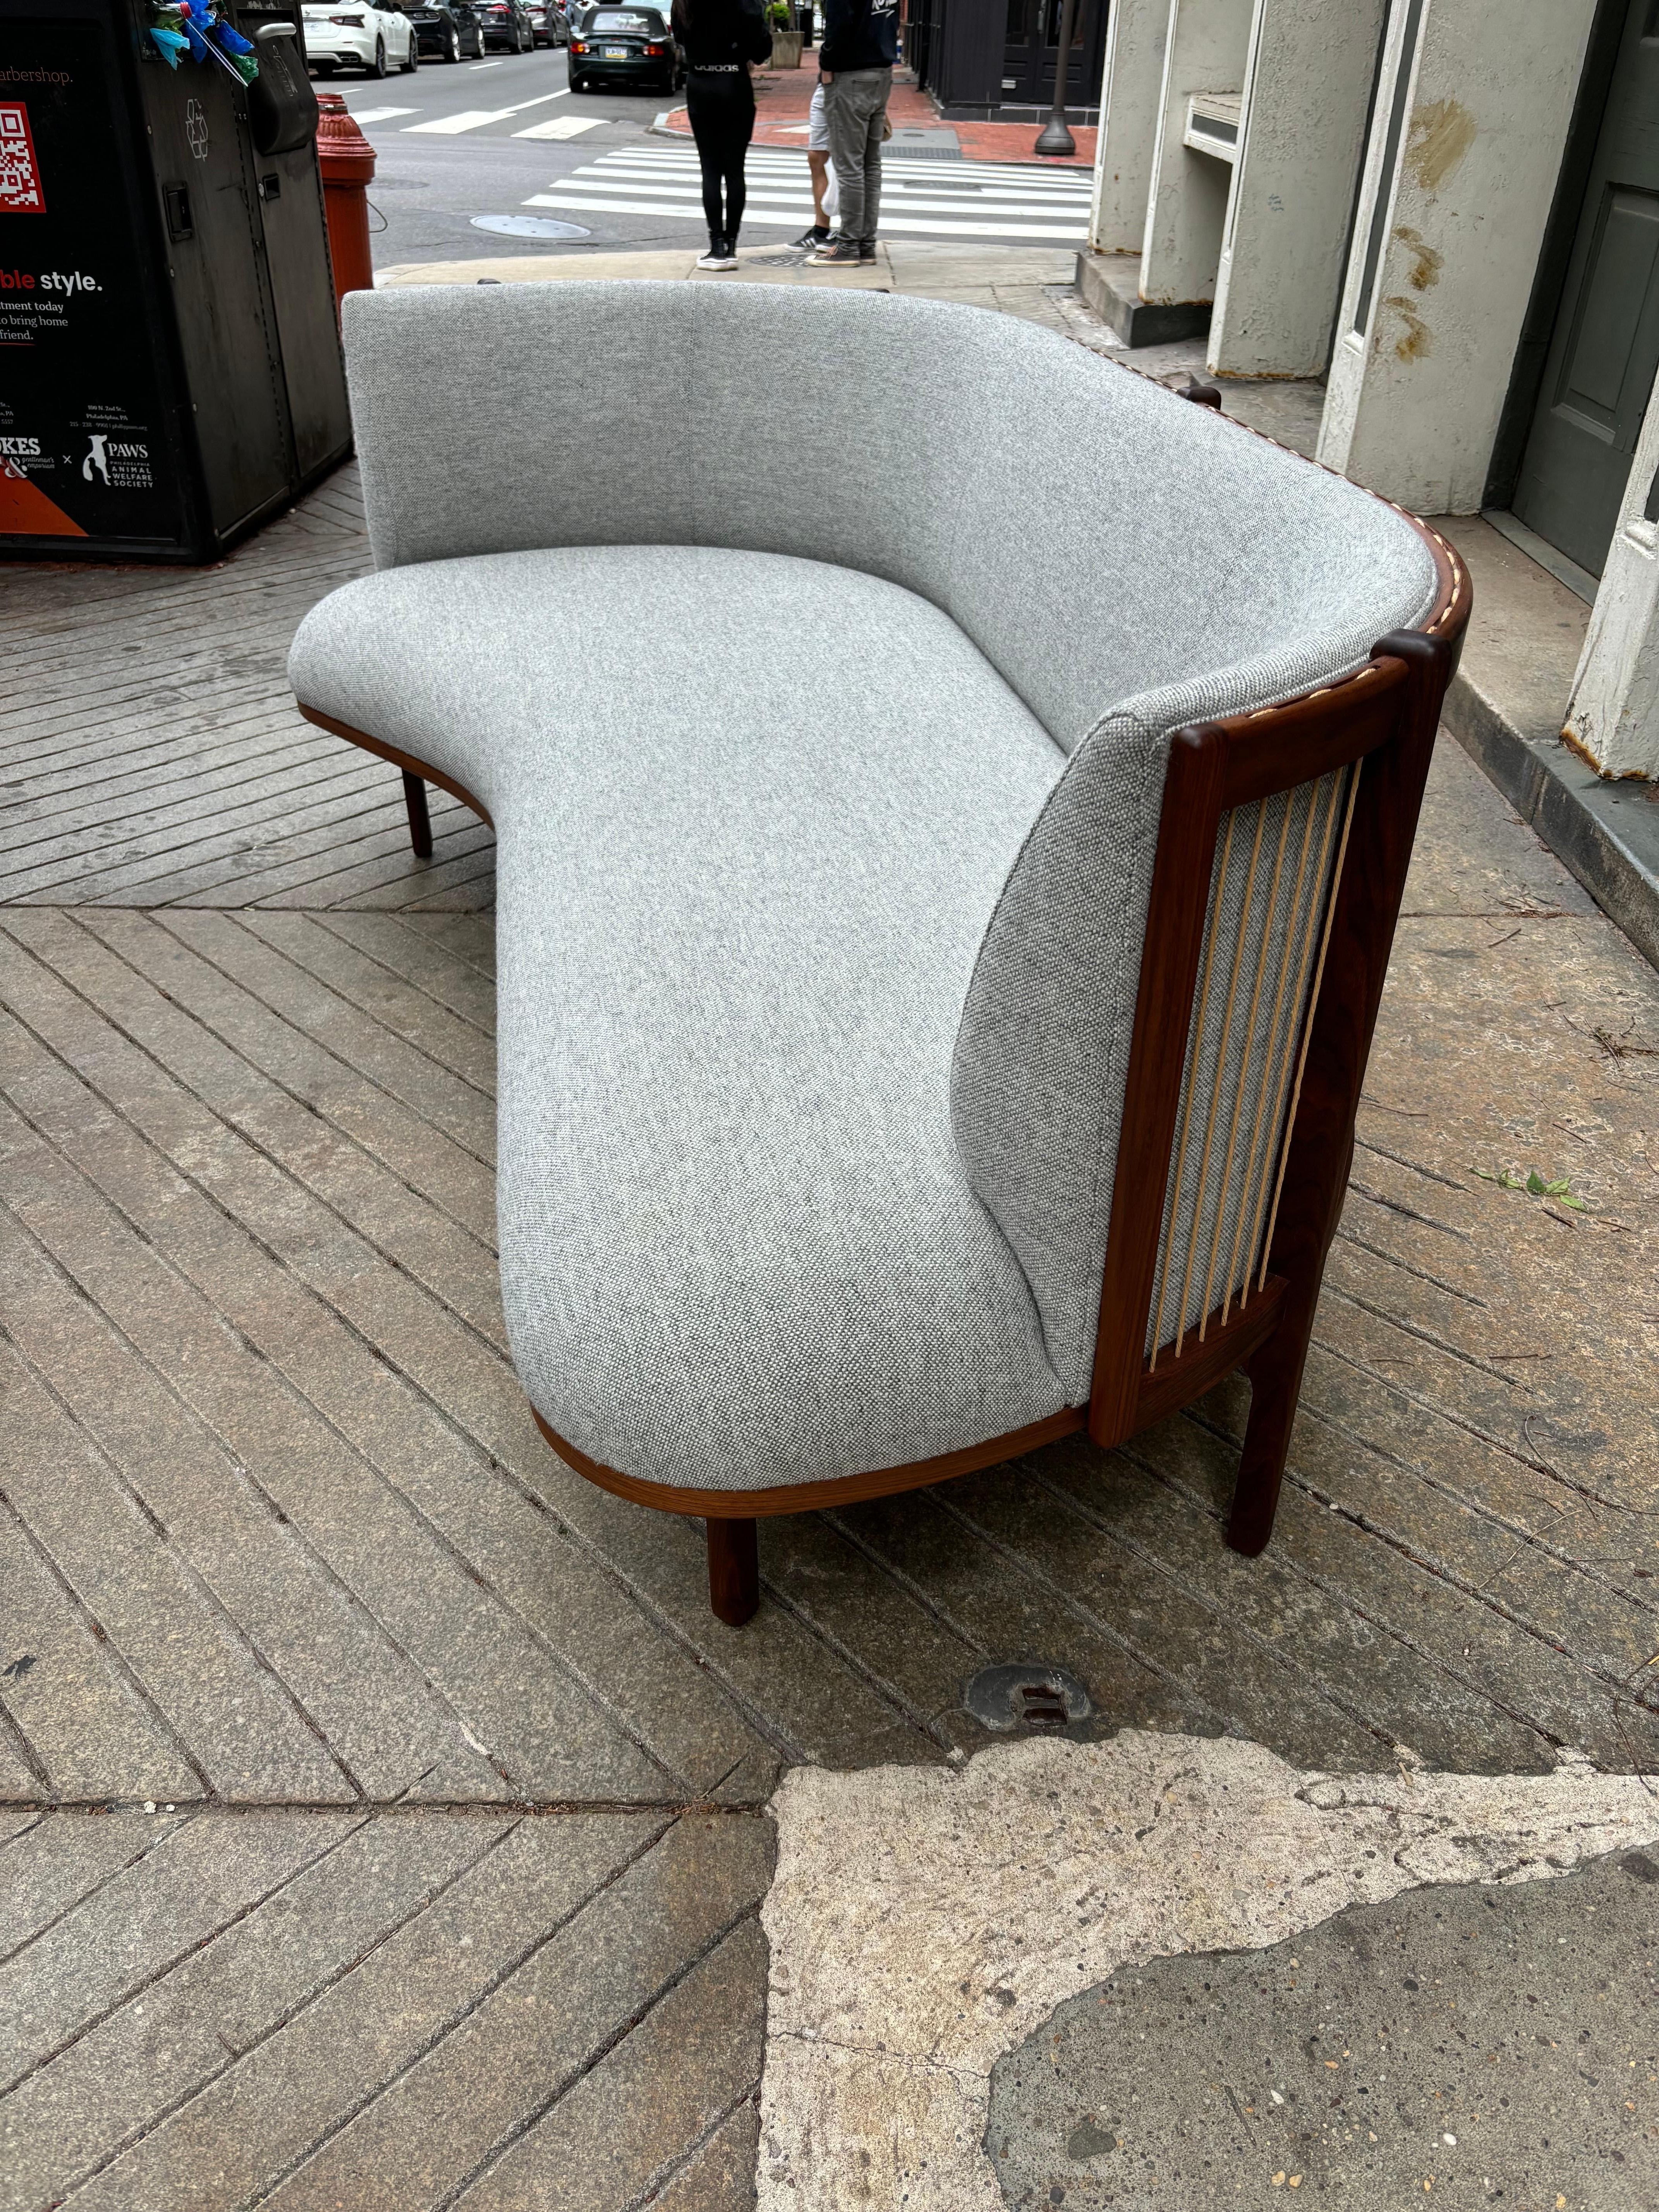 Rikke Frost Asymmetrical Sideways Sofa für Carl Hansen & Sons.  Gekauft für ein Musterhaus, immer noch in nahezu perfektem, neuwertigem Zustand!  Geölter Nussbaum mit Papercord-Rücken und schöner Polsterung!  Die Farbe ist blassgrau.  Er sitzt